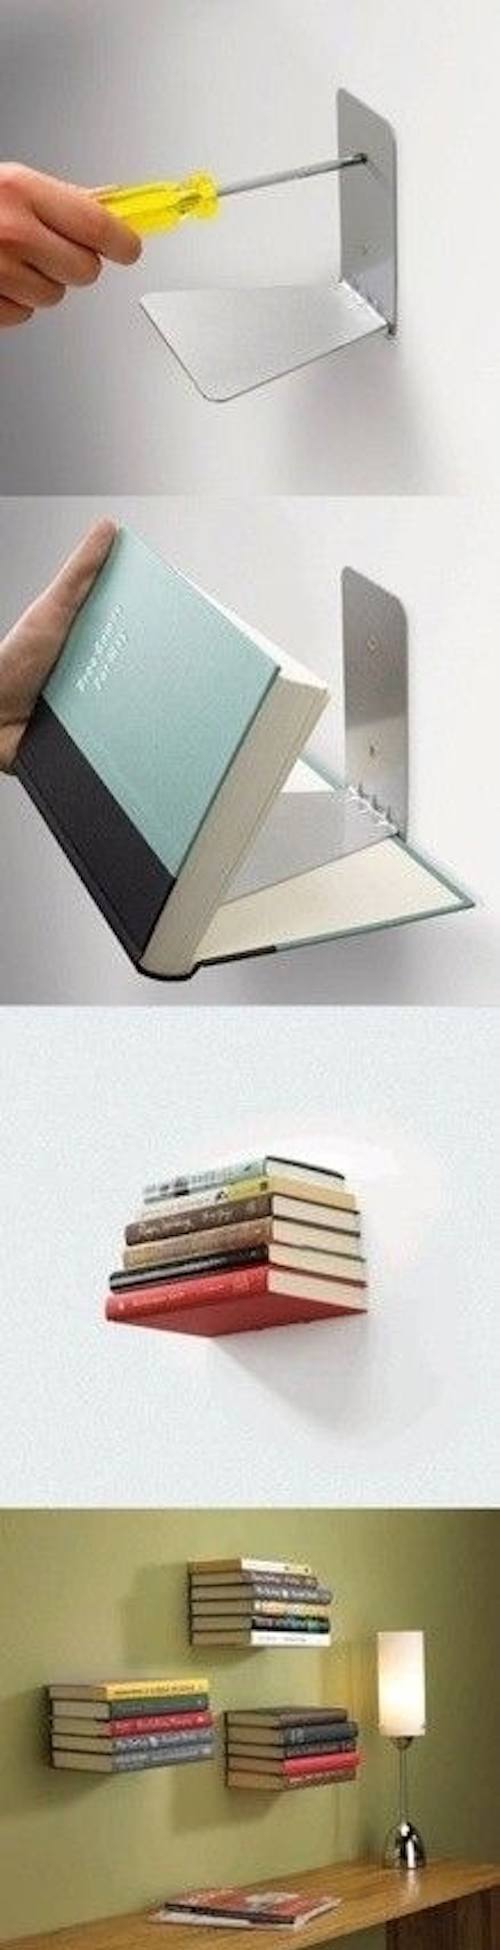 Col·loca prestatges invisibles per emmagatzemar els teus llibres.